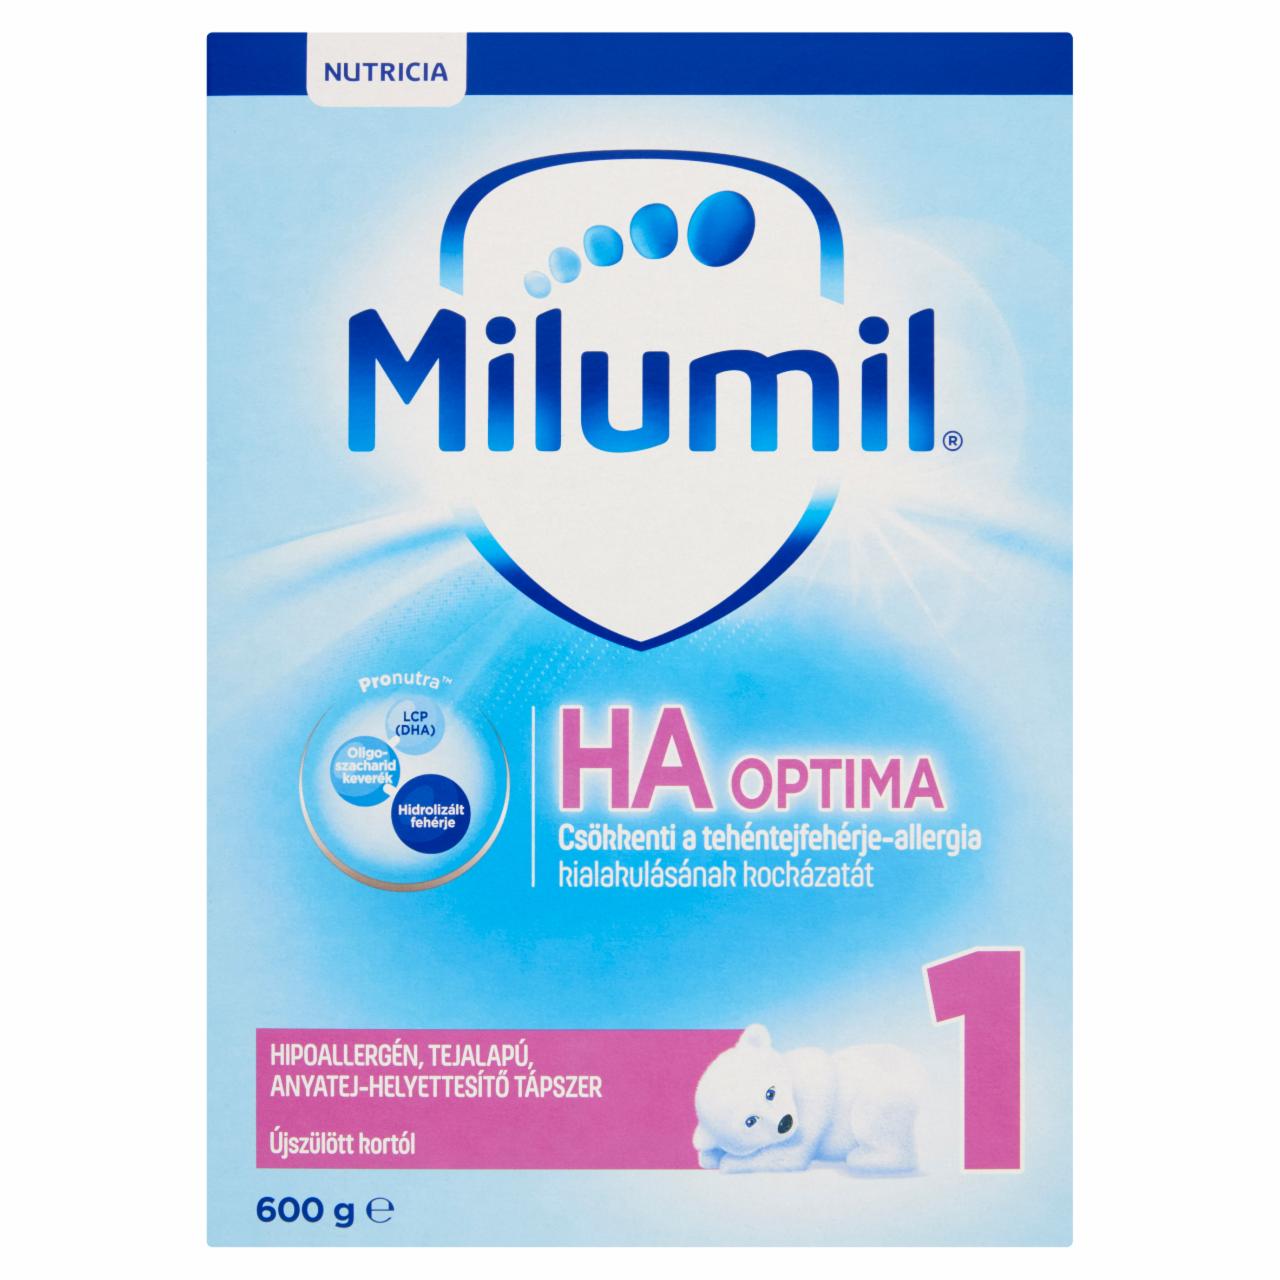 Képek - Milumil HA1 Optima hipoallergén, tejalapú, anyatej-helyettesítő tápszer újszülött kortól 600 g